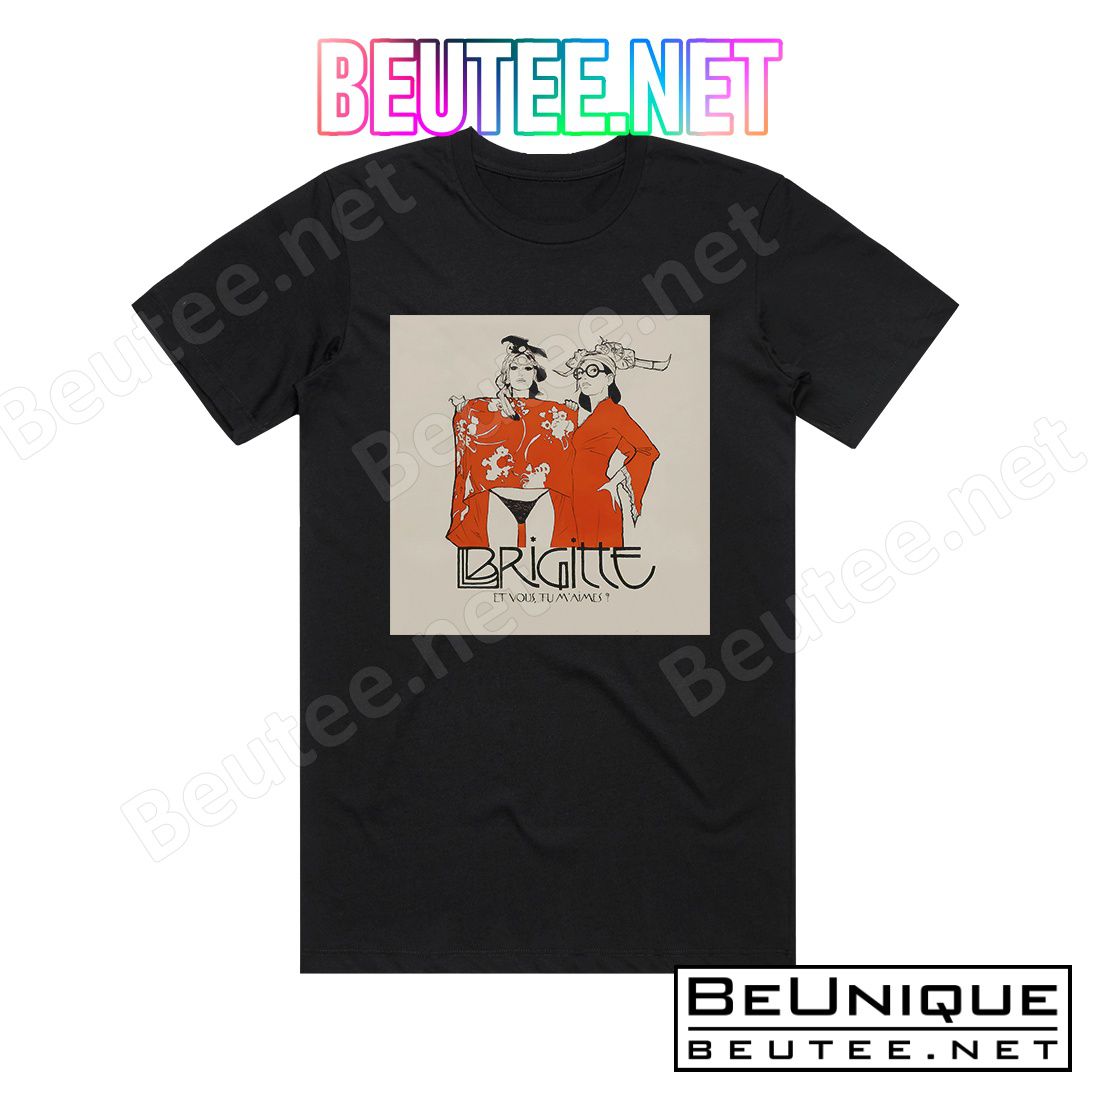 Brigitte Et Vous Tu M'aimes Album Cover T-Shirt